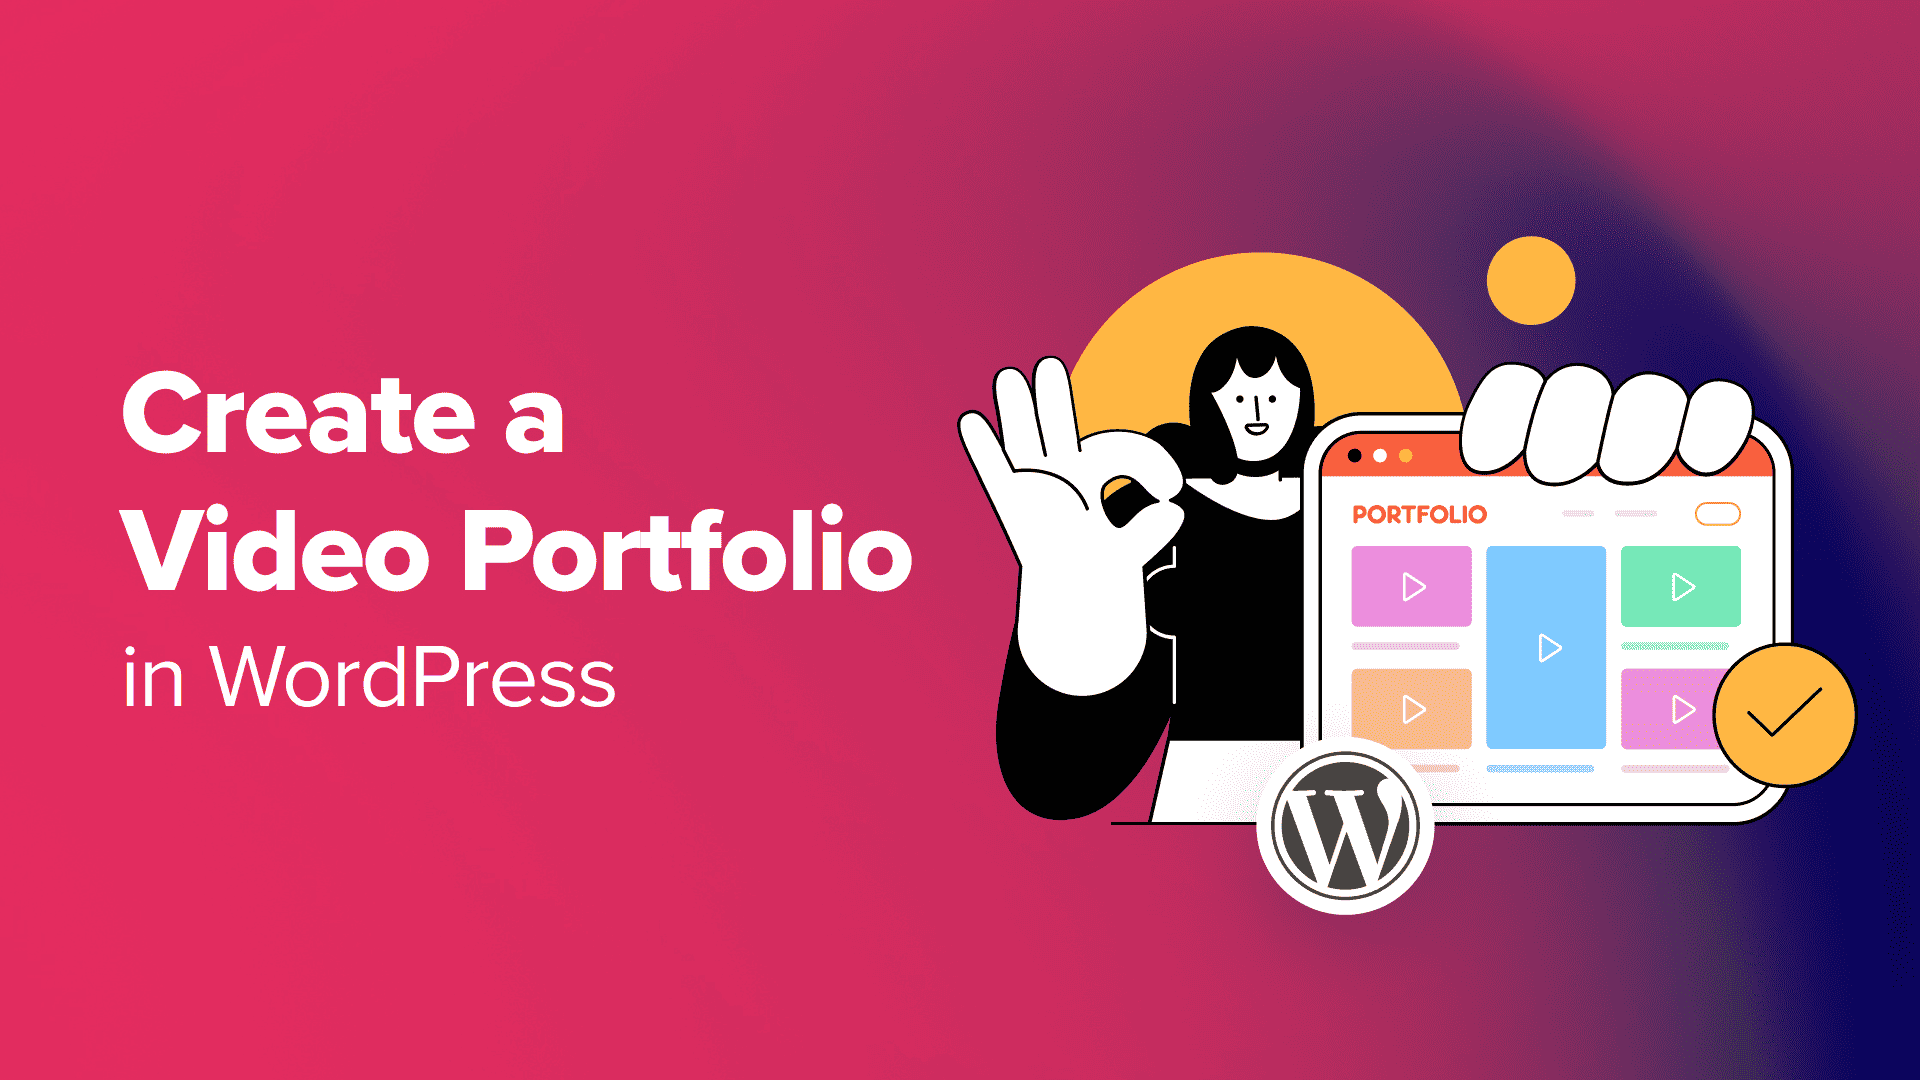 Come creare un portfolio video in WordPress (passo dopo passo)